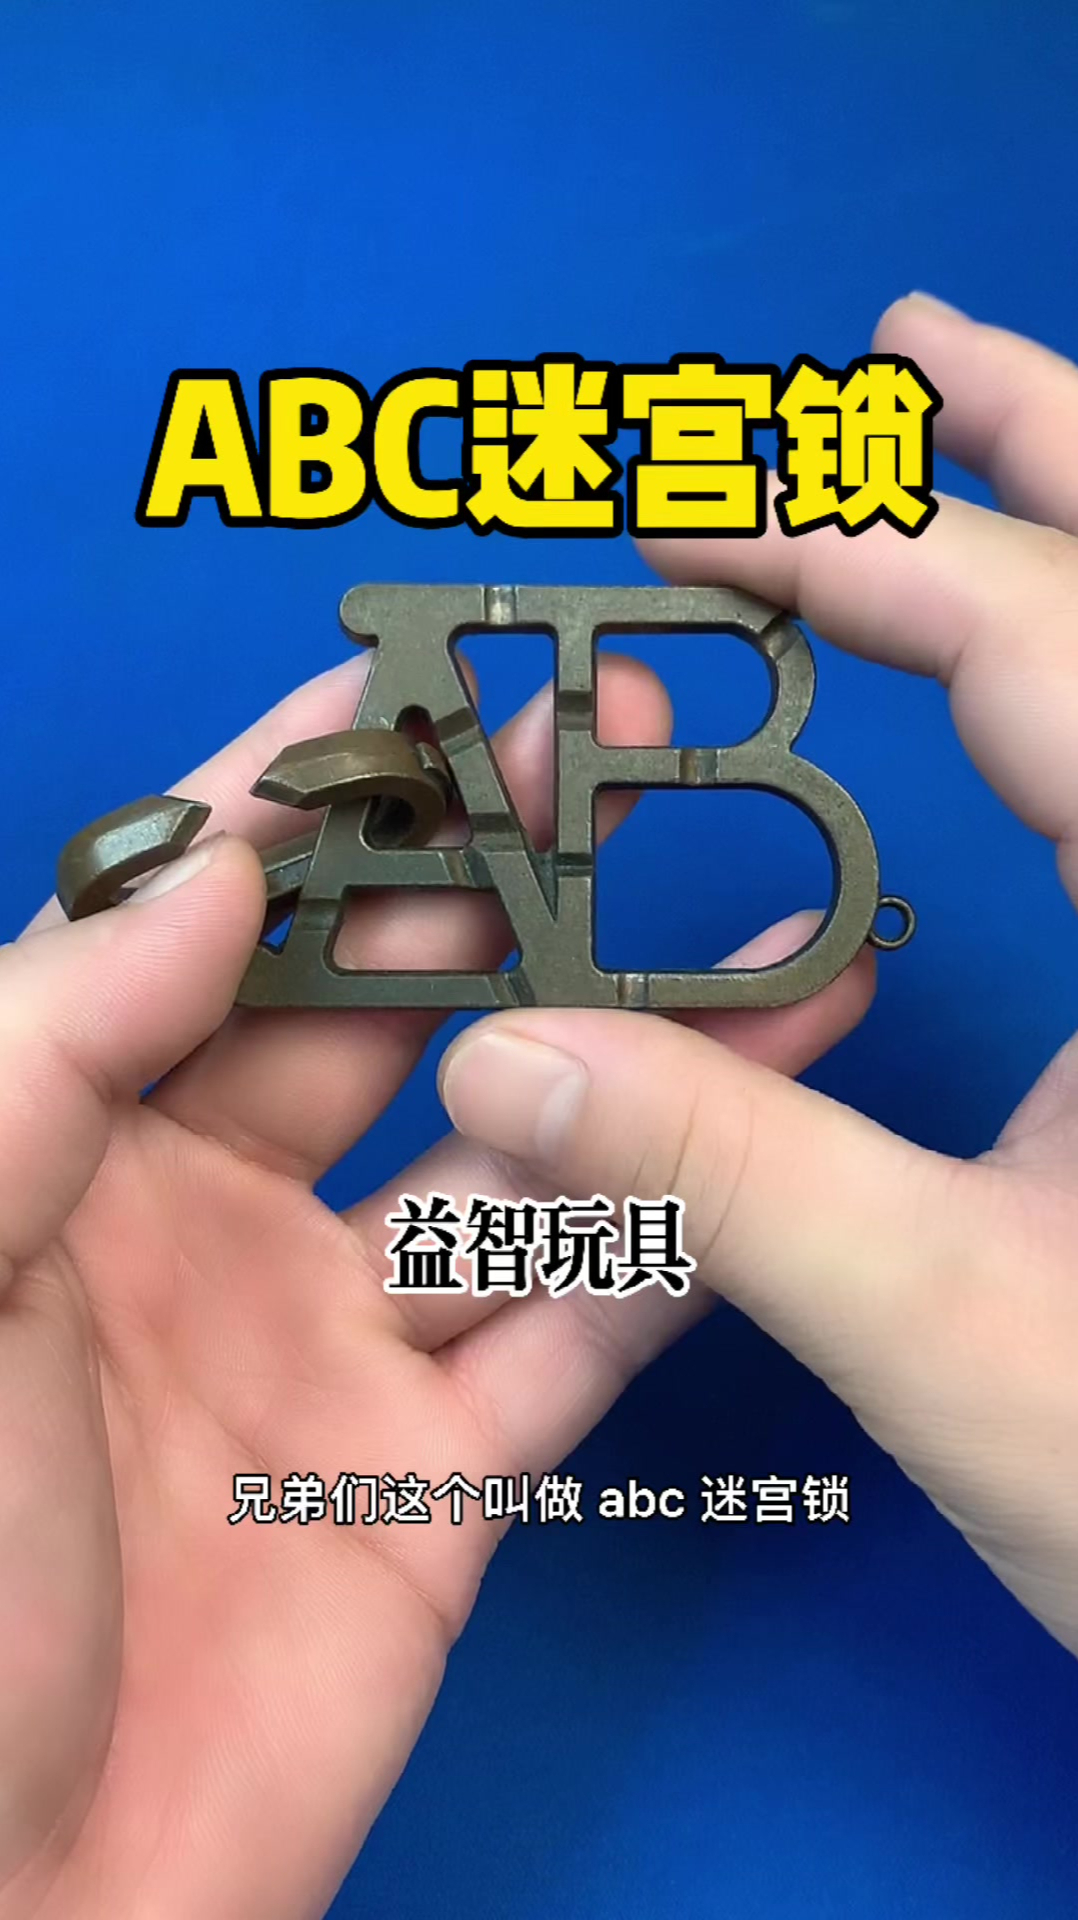 abc锁使用说明图示图片